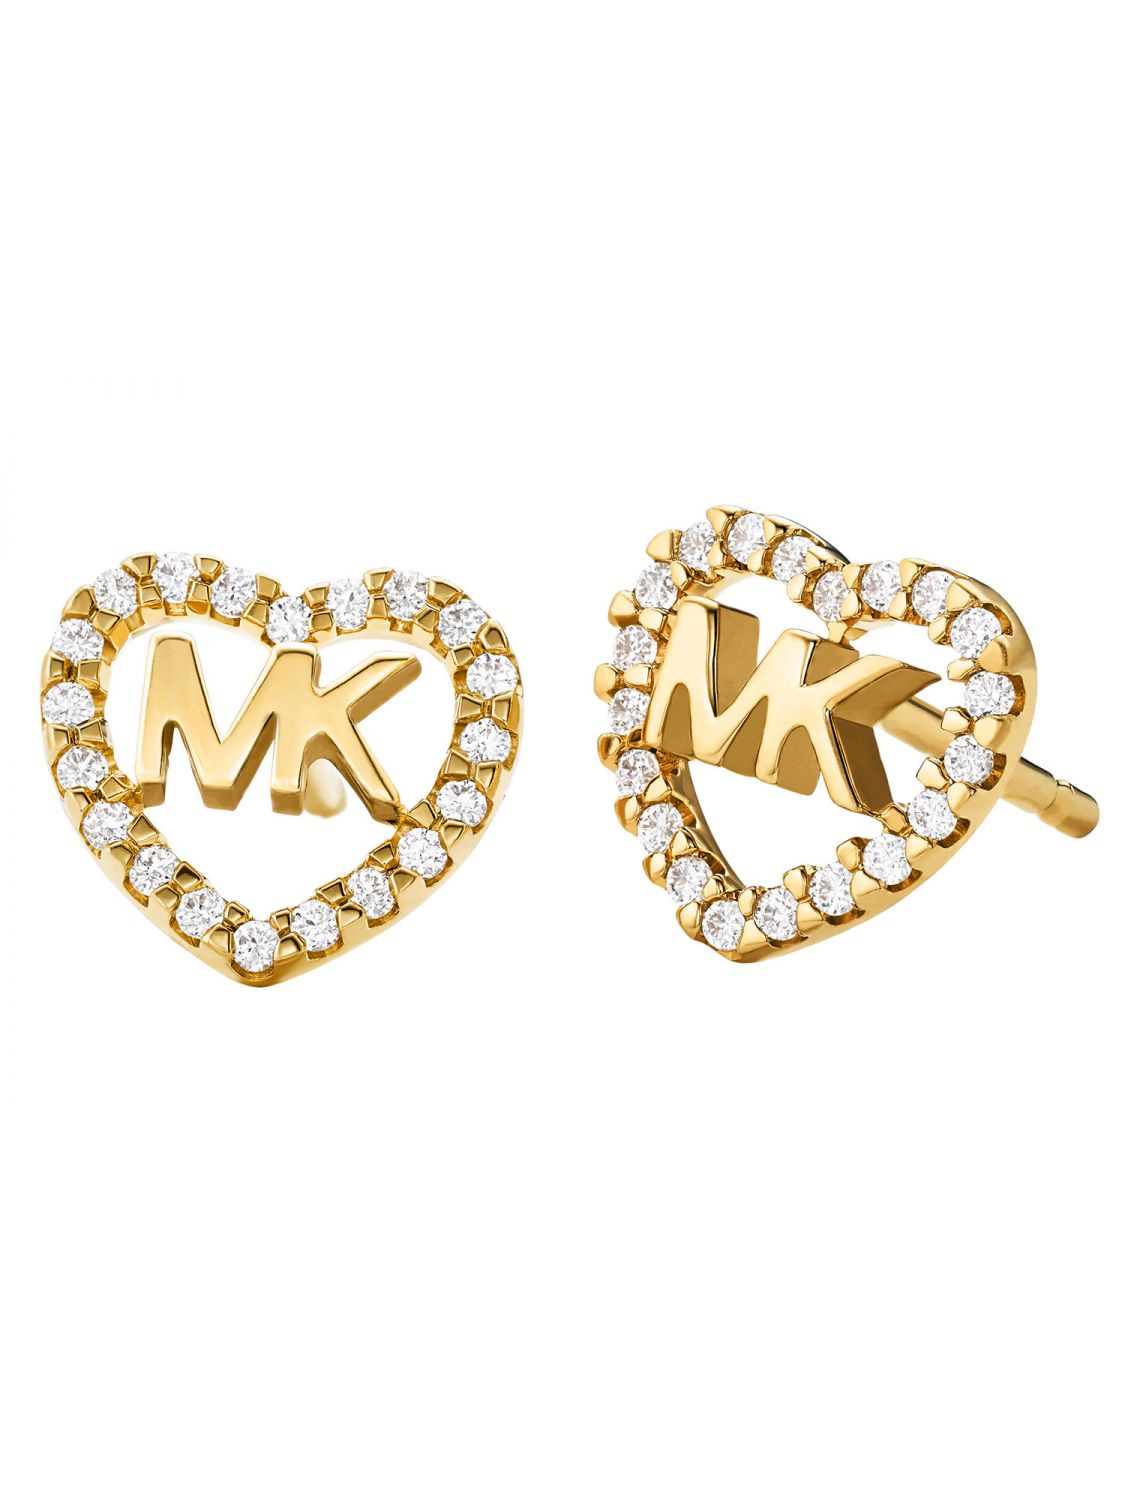 MICHAEL KORS MKC1243AN710 Ladies' Earrings